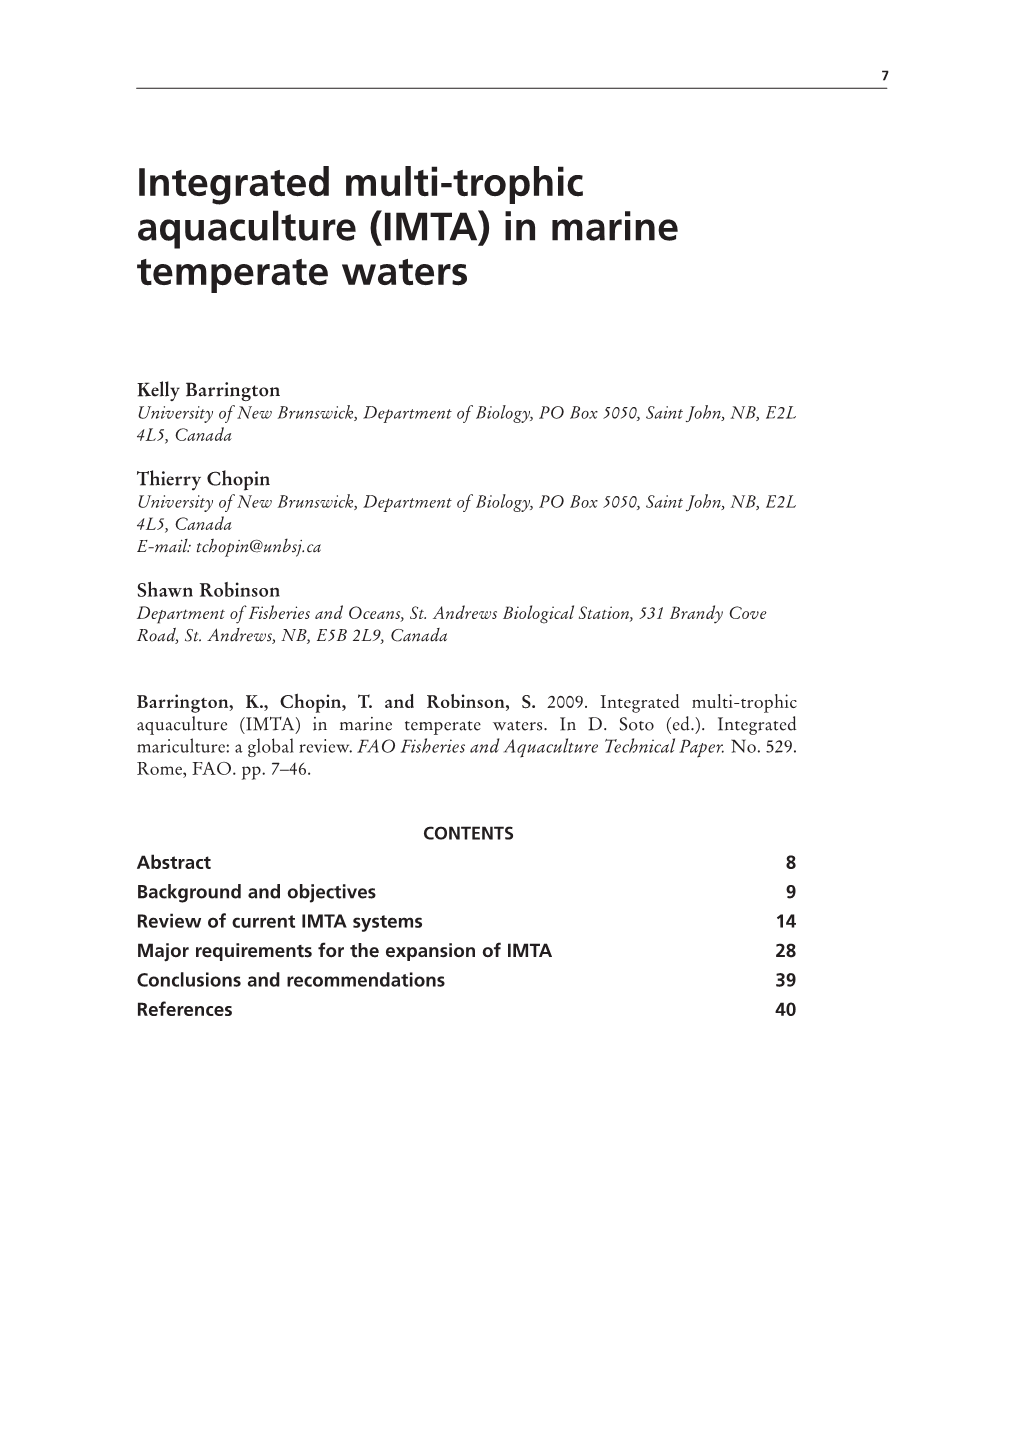 Integrated Multi-Trophic Aquaculture (IMTA) in Marine Temperate Waters